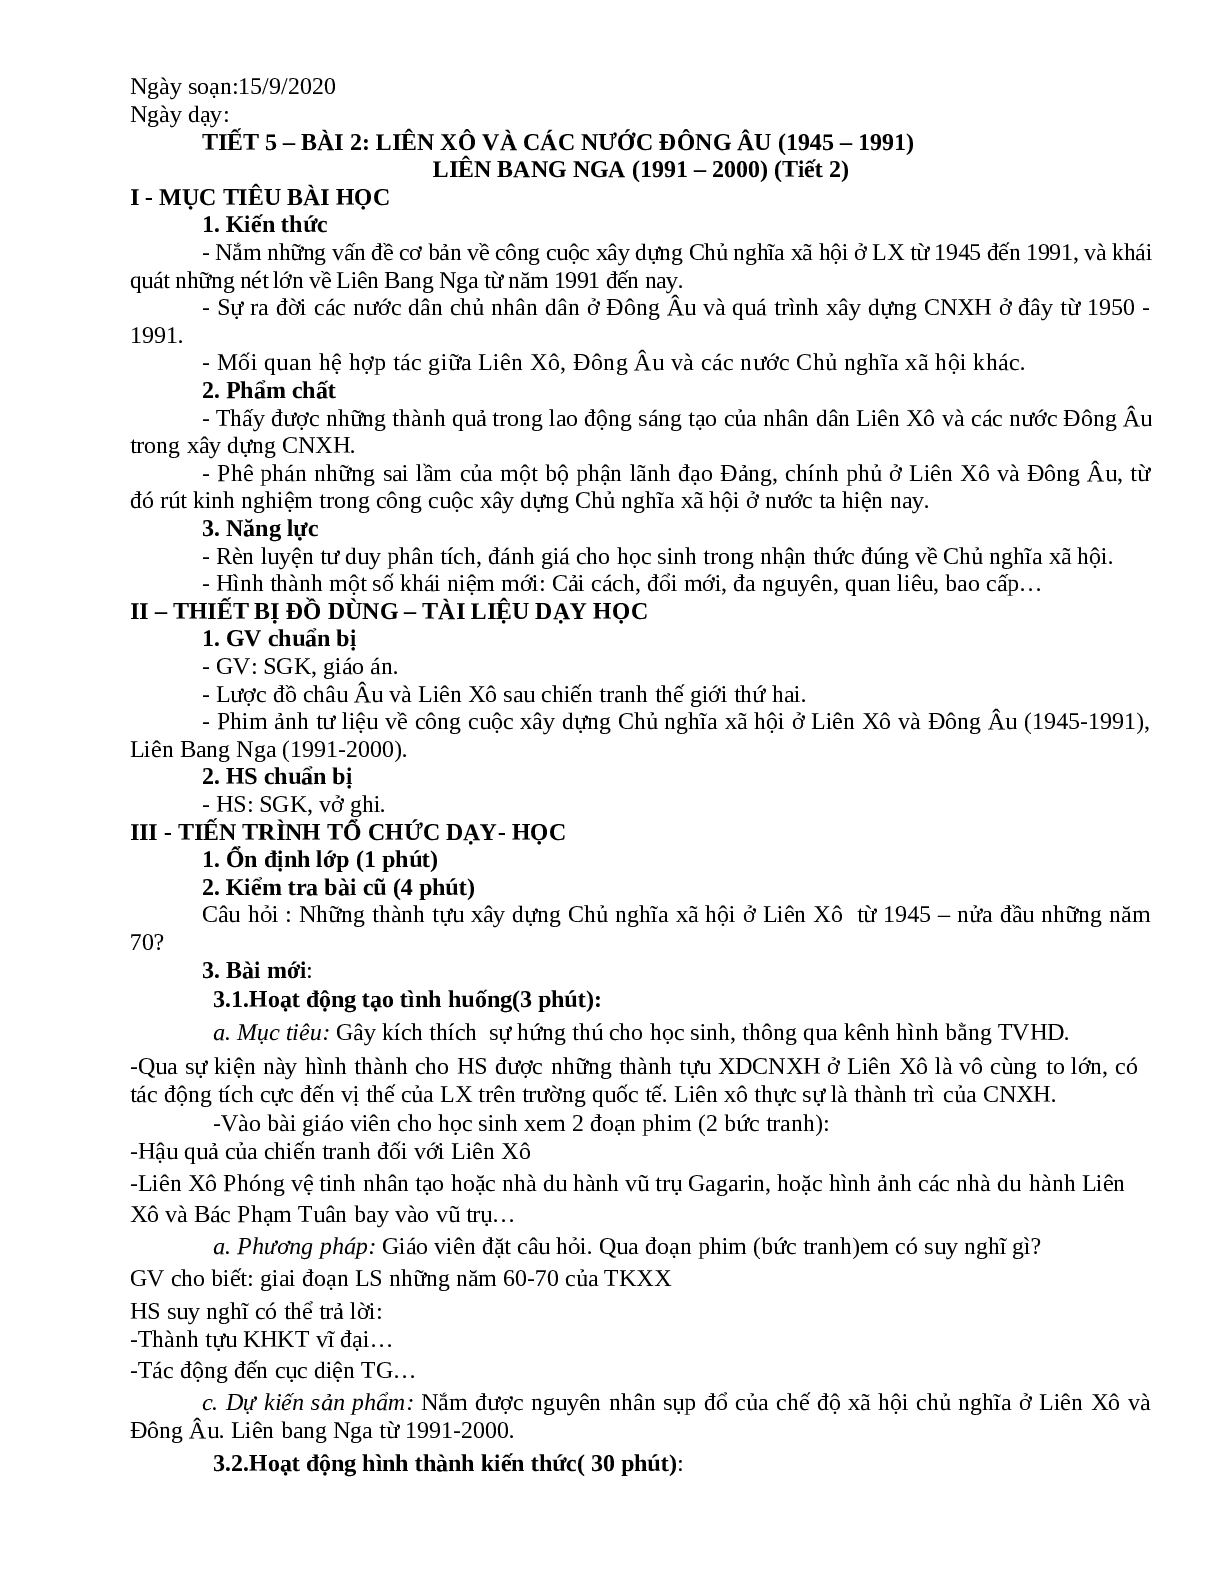 Giáo án Lịch Sử 11 chuẩn nhất (trang 10)